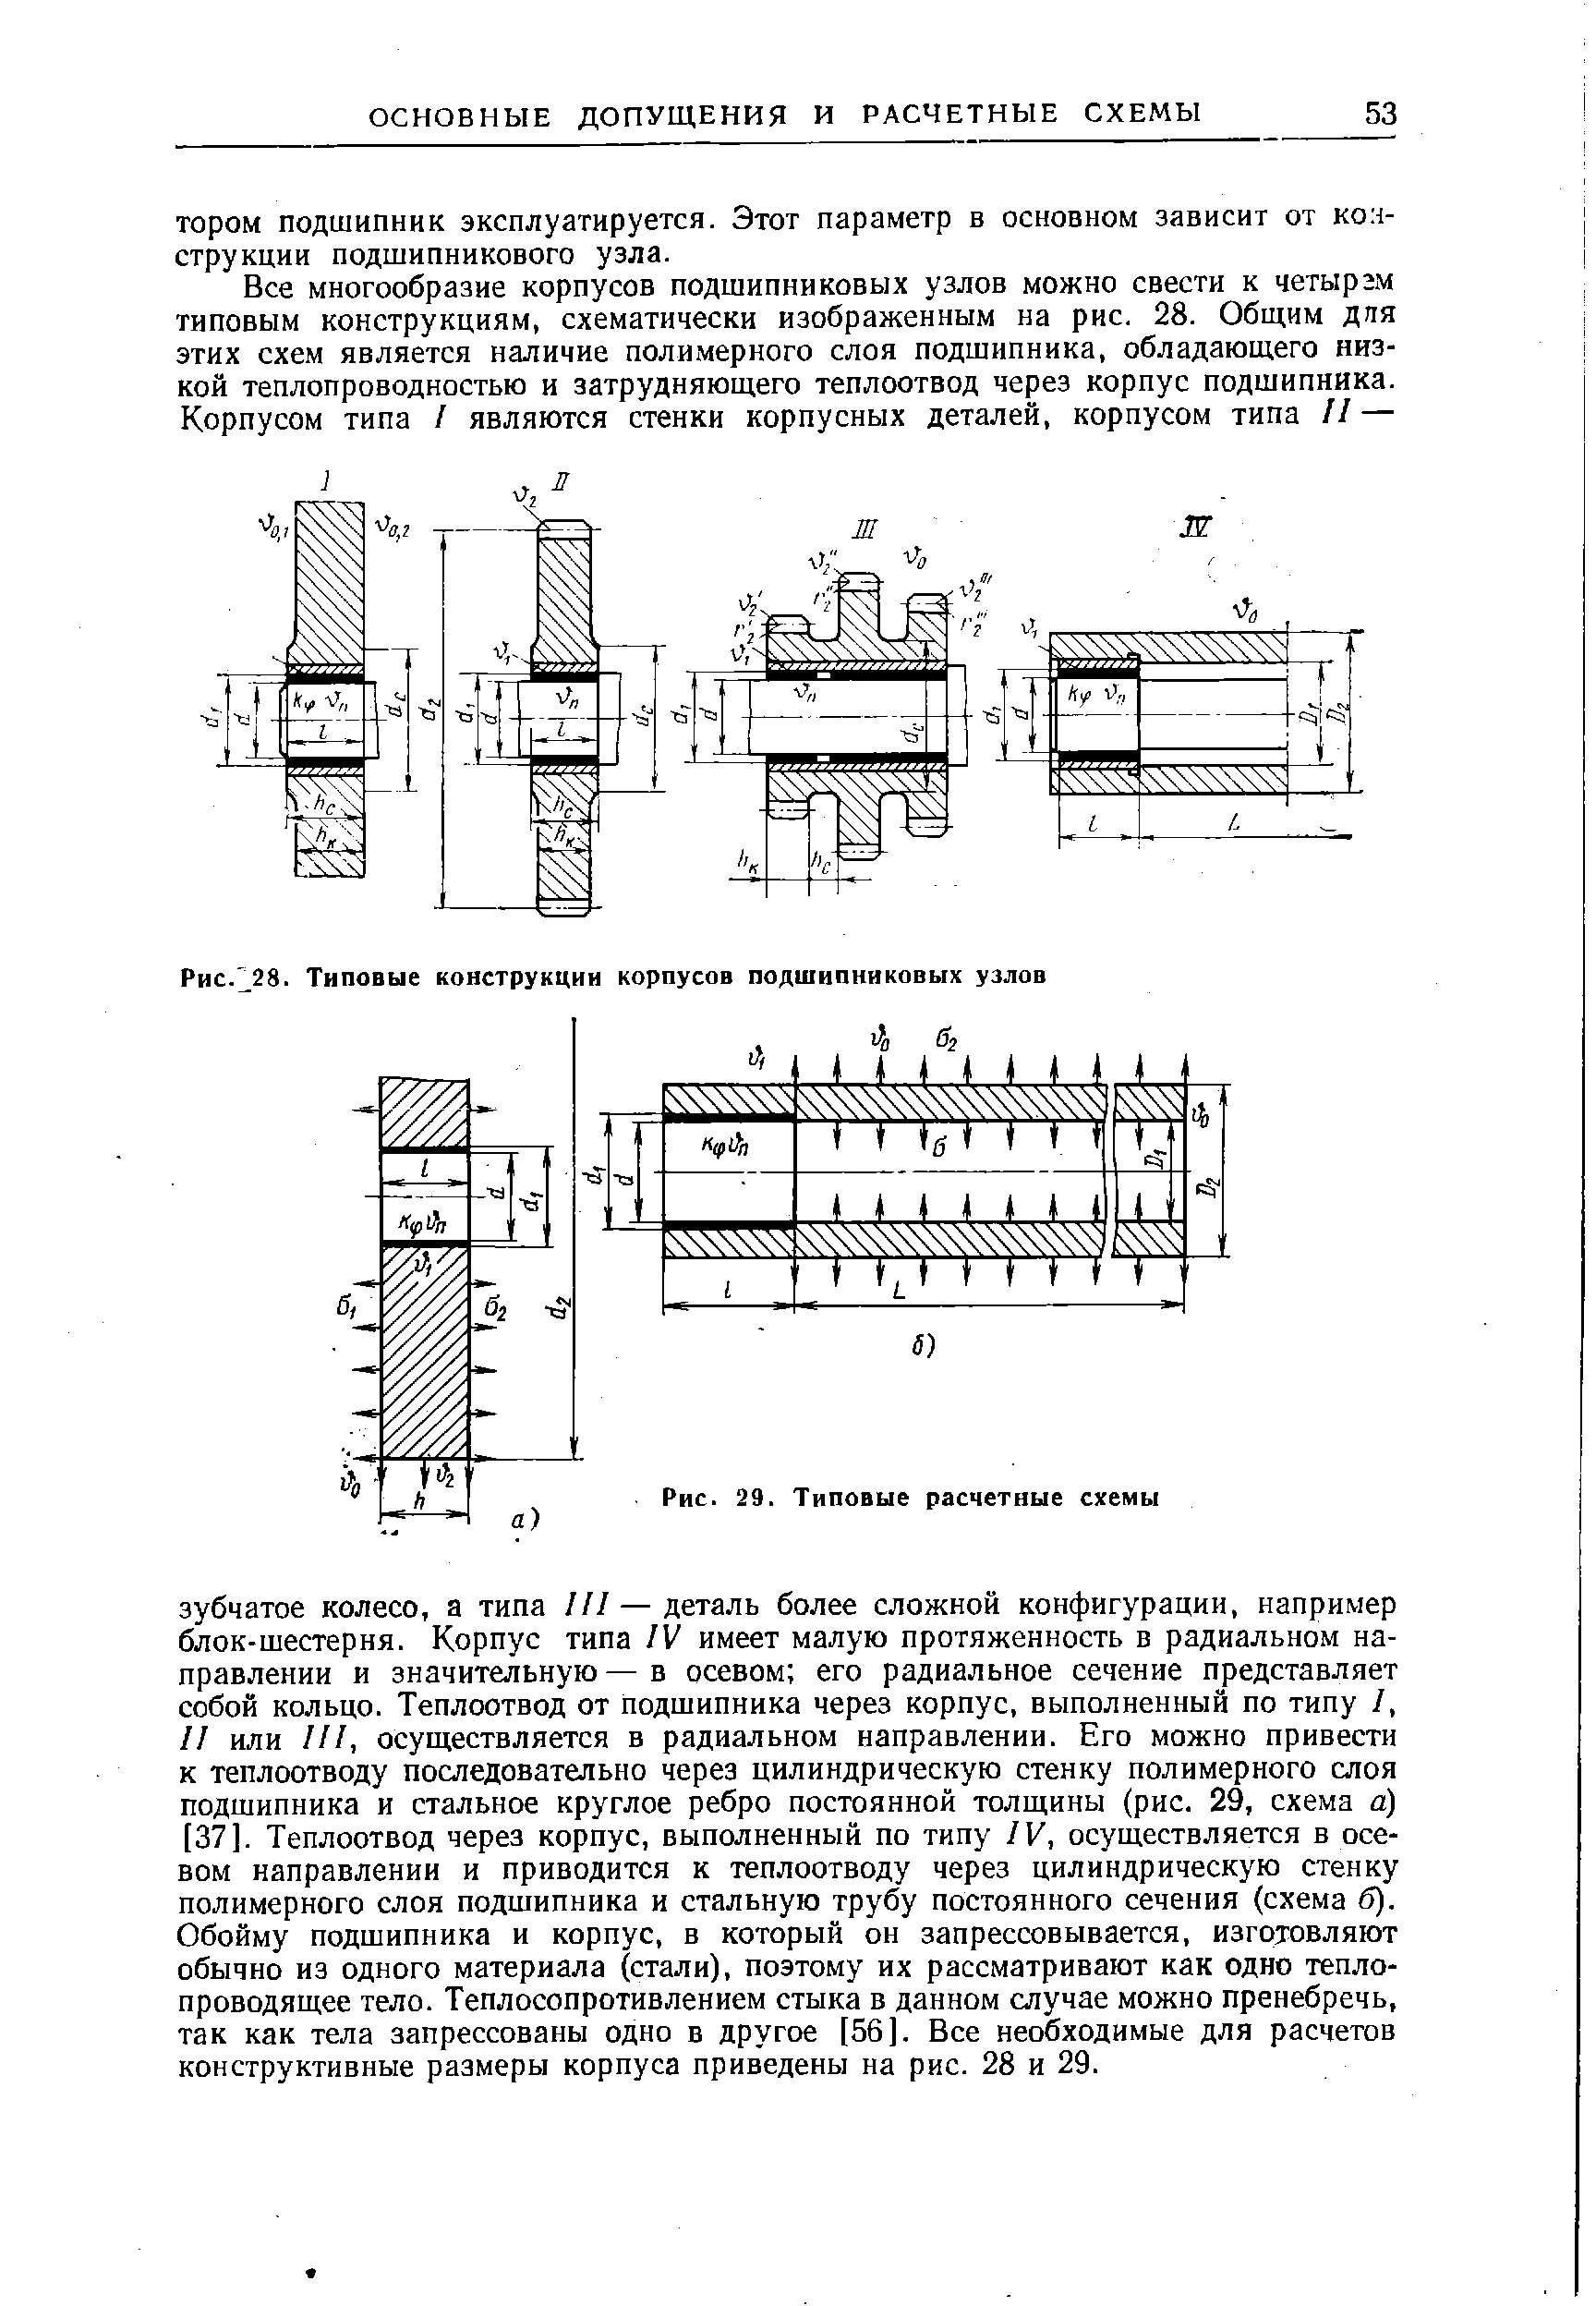 Рис. 38. Типовые конструкции корпусов подшипниковых узлов
